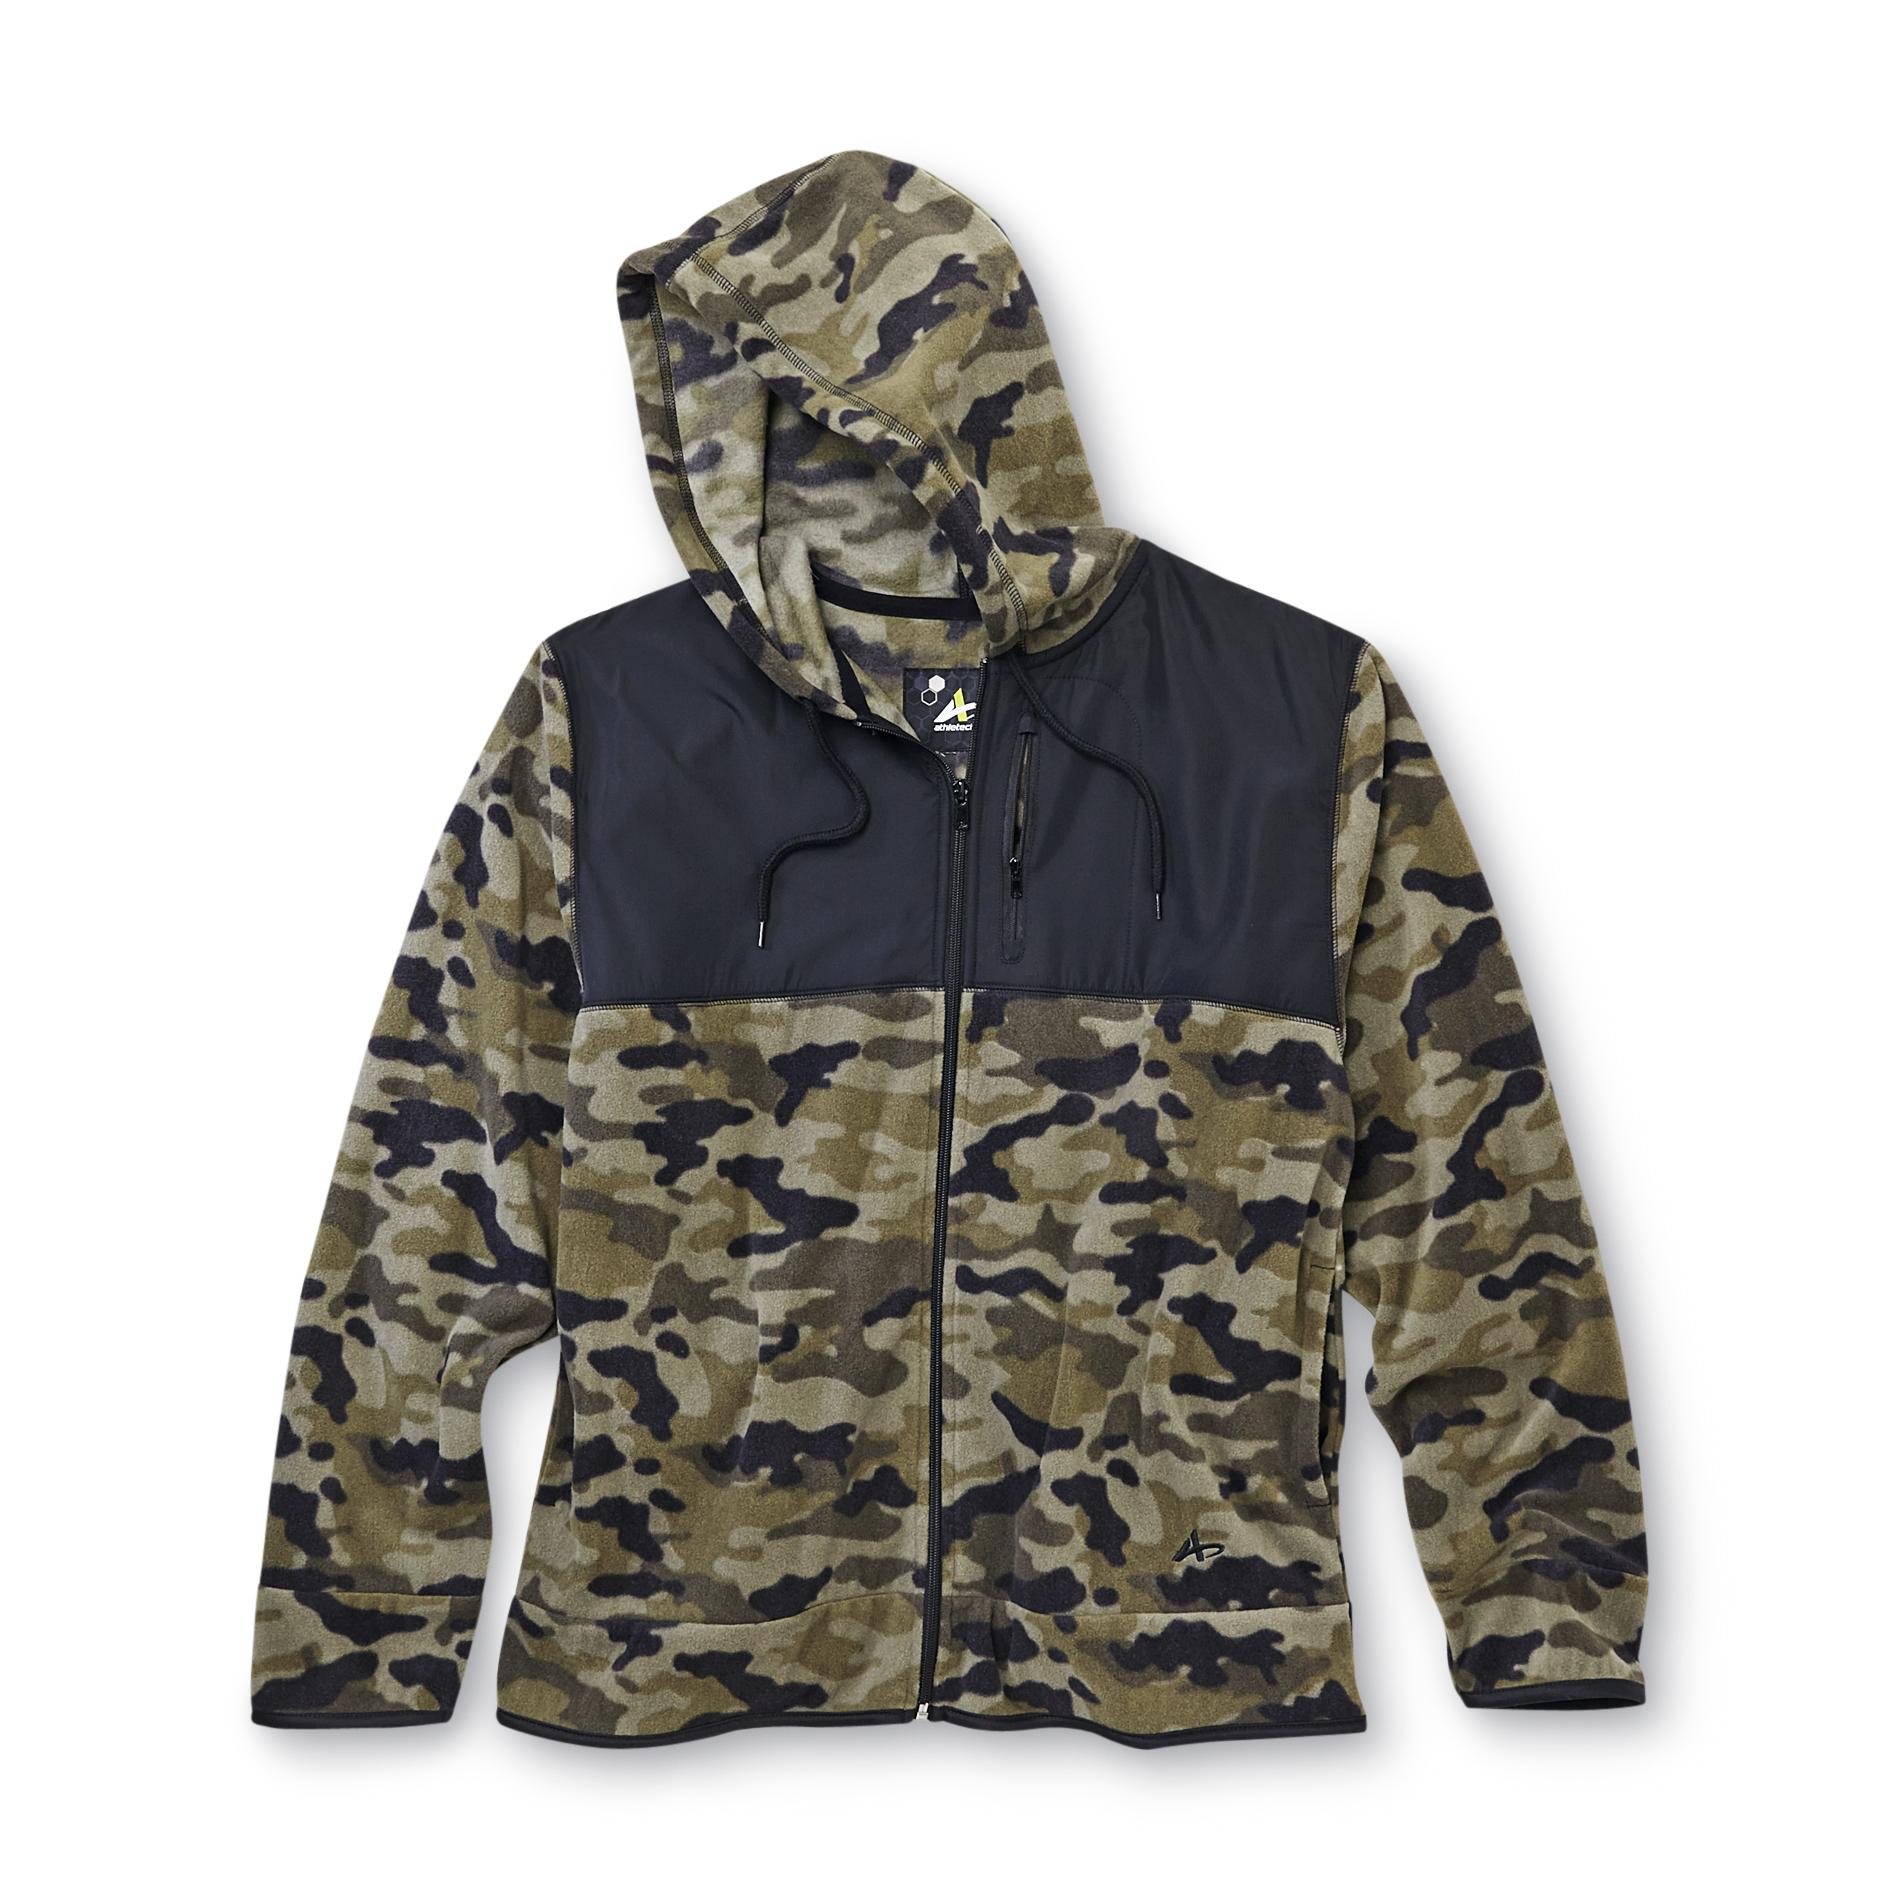 Athletech Men's Fleece Hoodie Jacket - Camouflage